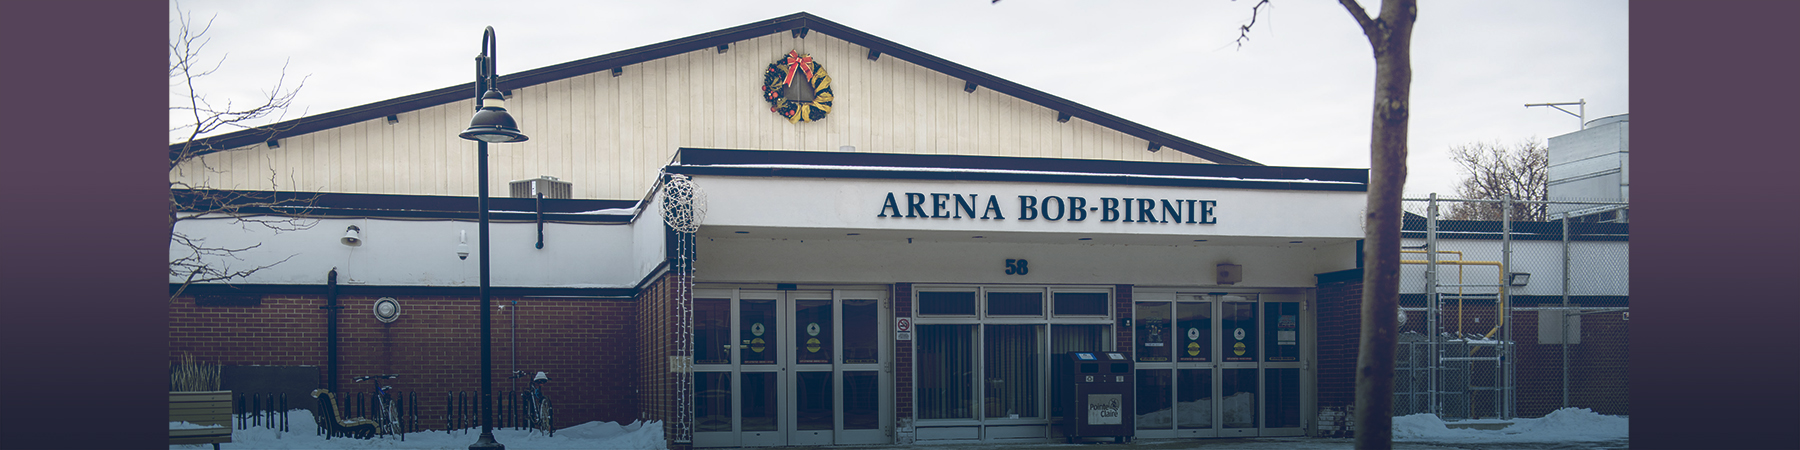 Actualizaciones importantes sobre Bob-Birnie Arena